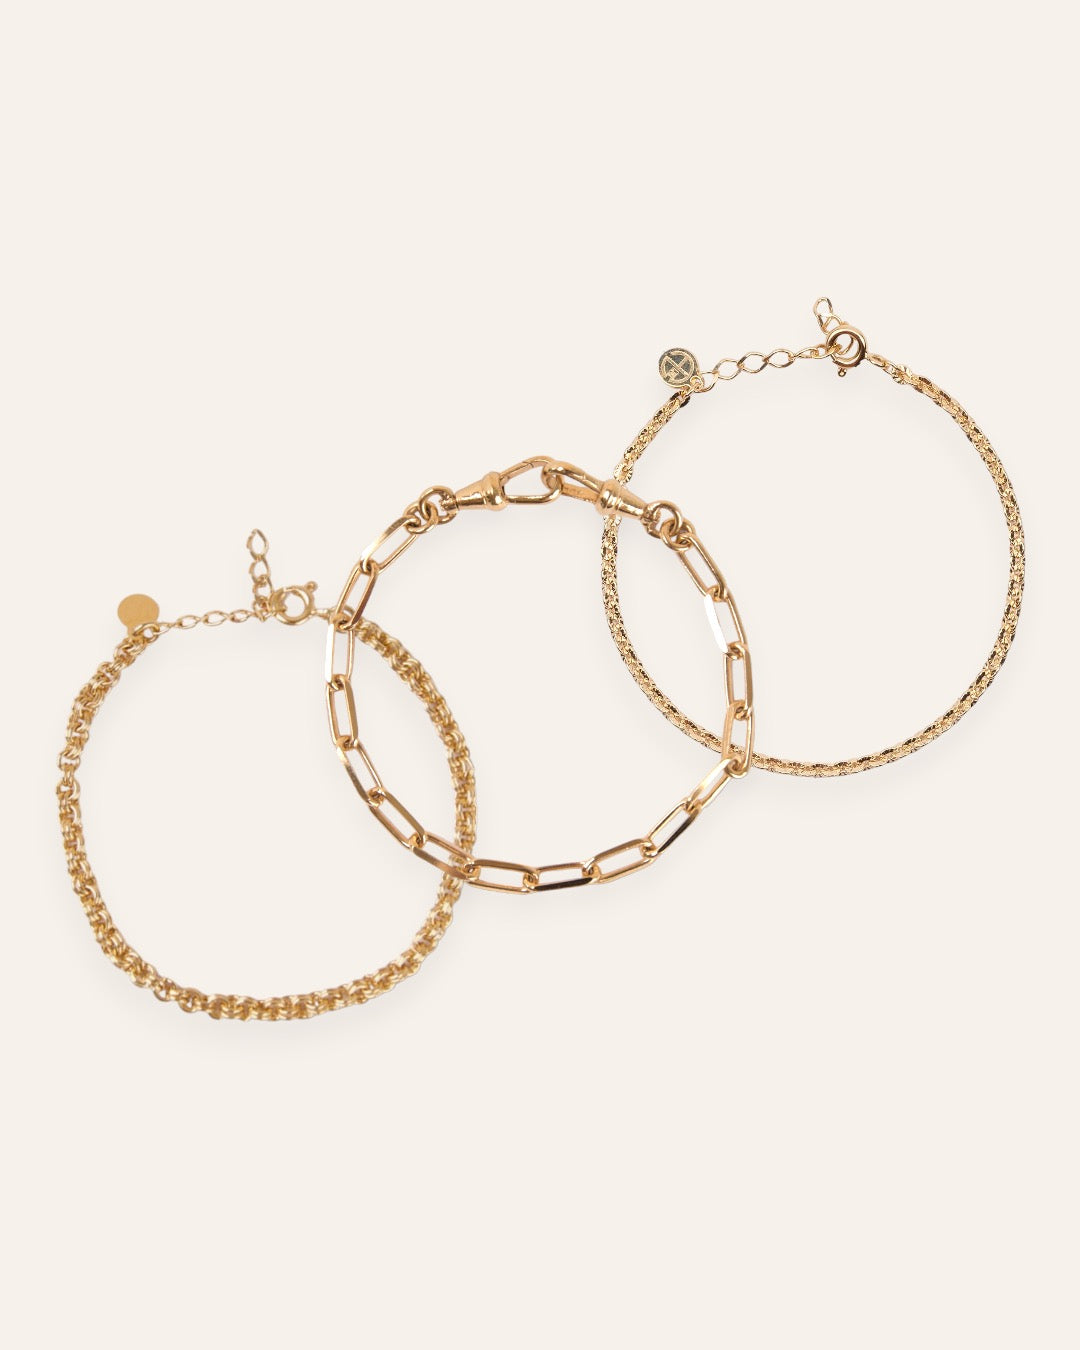 Composition de trois bracelets, avec un bracelet épais en chaîne forçat avec des mailles rondes, un bracelet épais avec une chaîne aux mailles rectangles, et un bracelet en maille soleil en plaqué or 18 carats.